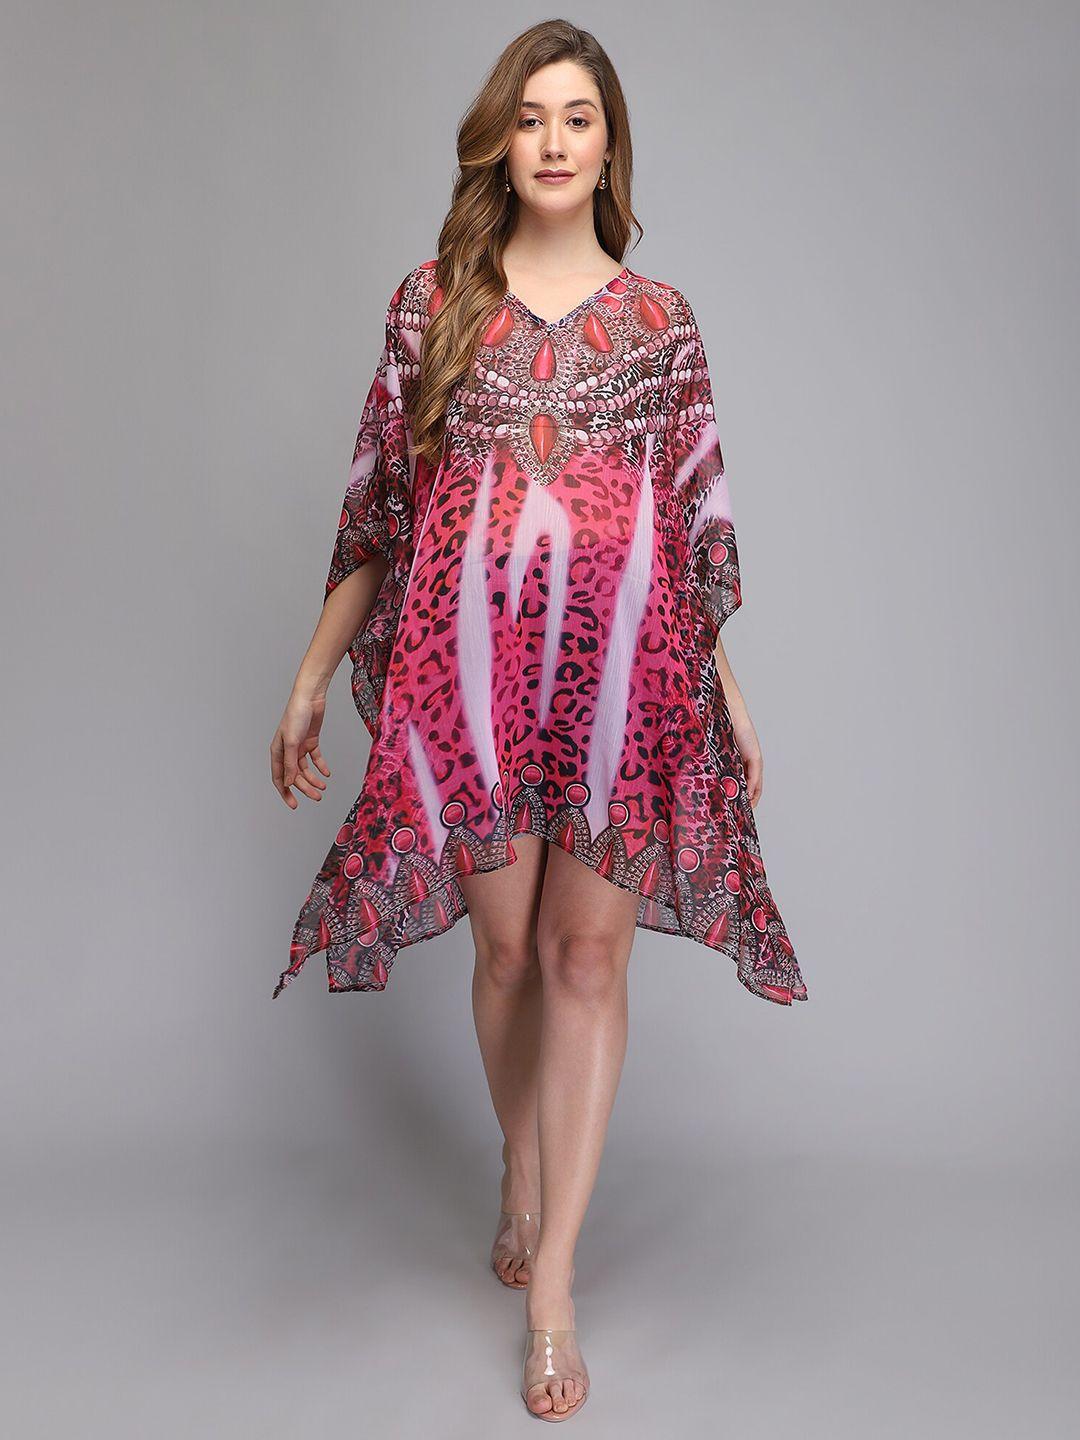 aditi-wasan-pink-abstract-printed-chiffon-kaftan-midi-dress